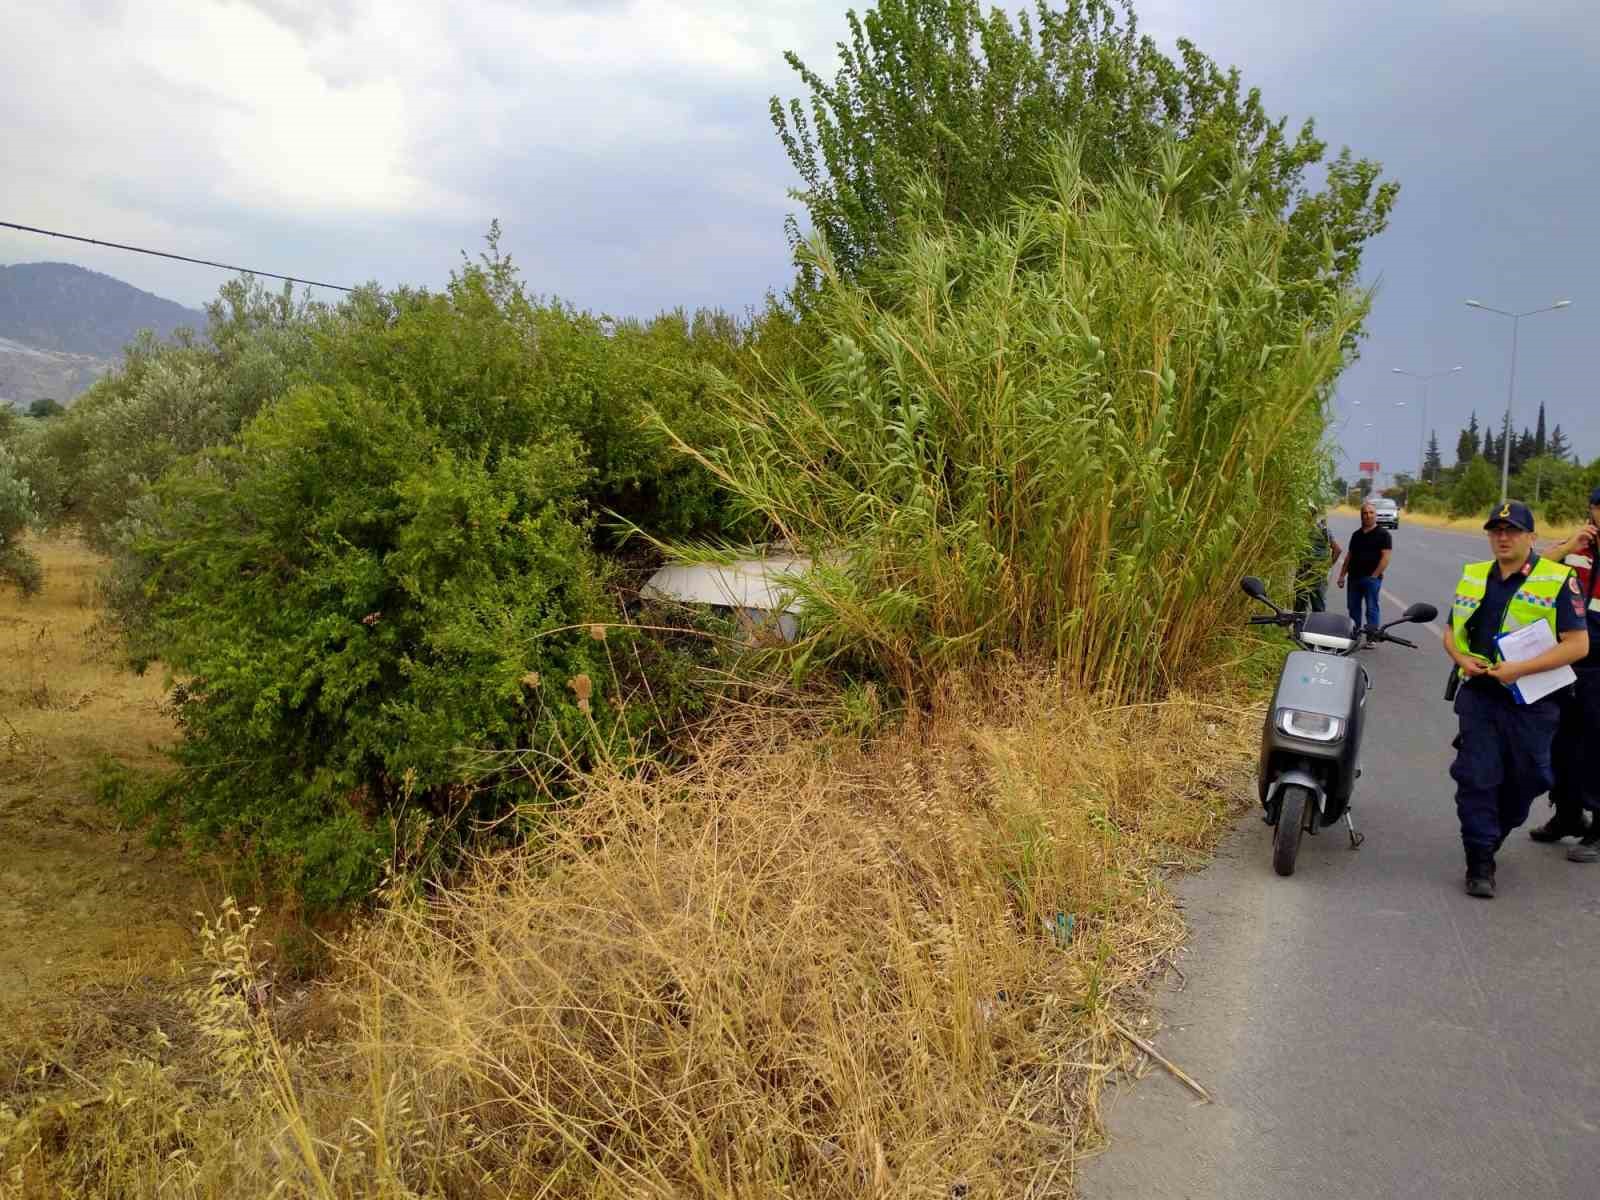 Yoldan çıkan ticari araç ağaca çarptı: 2 yaralı
